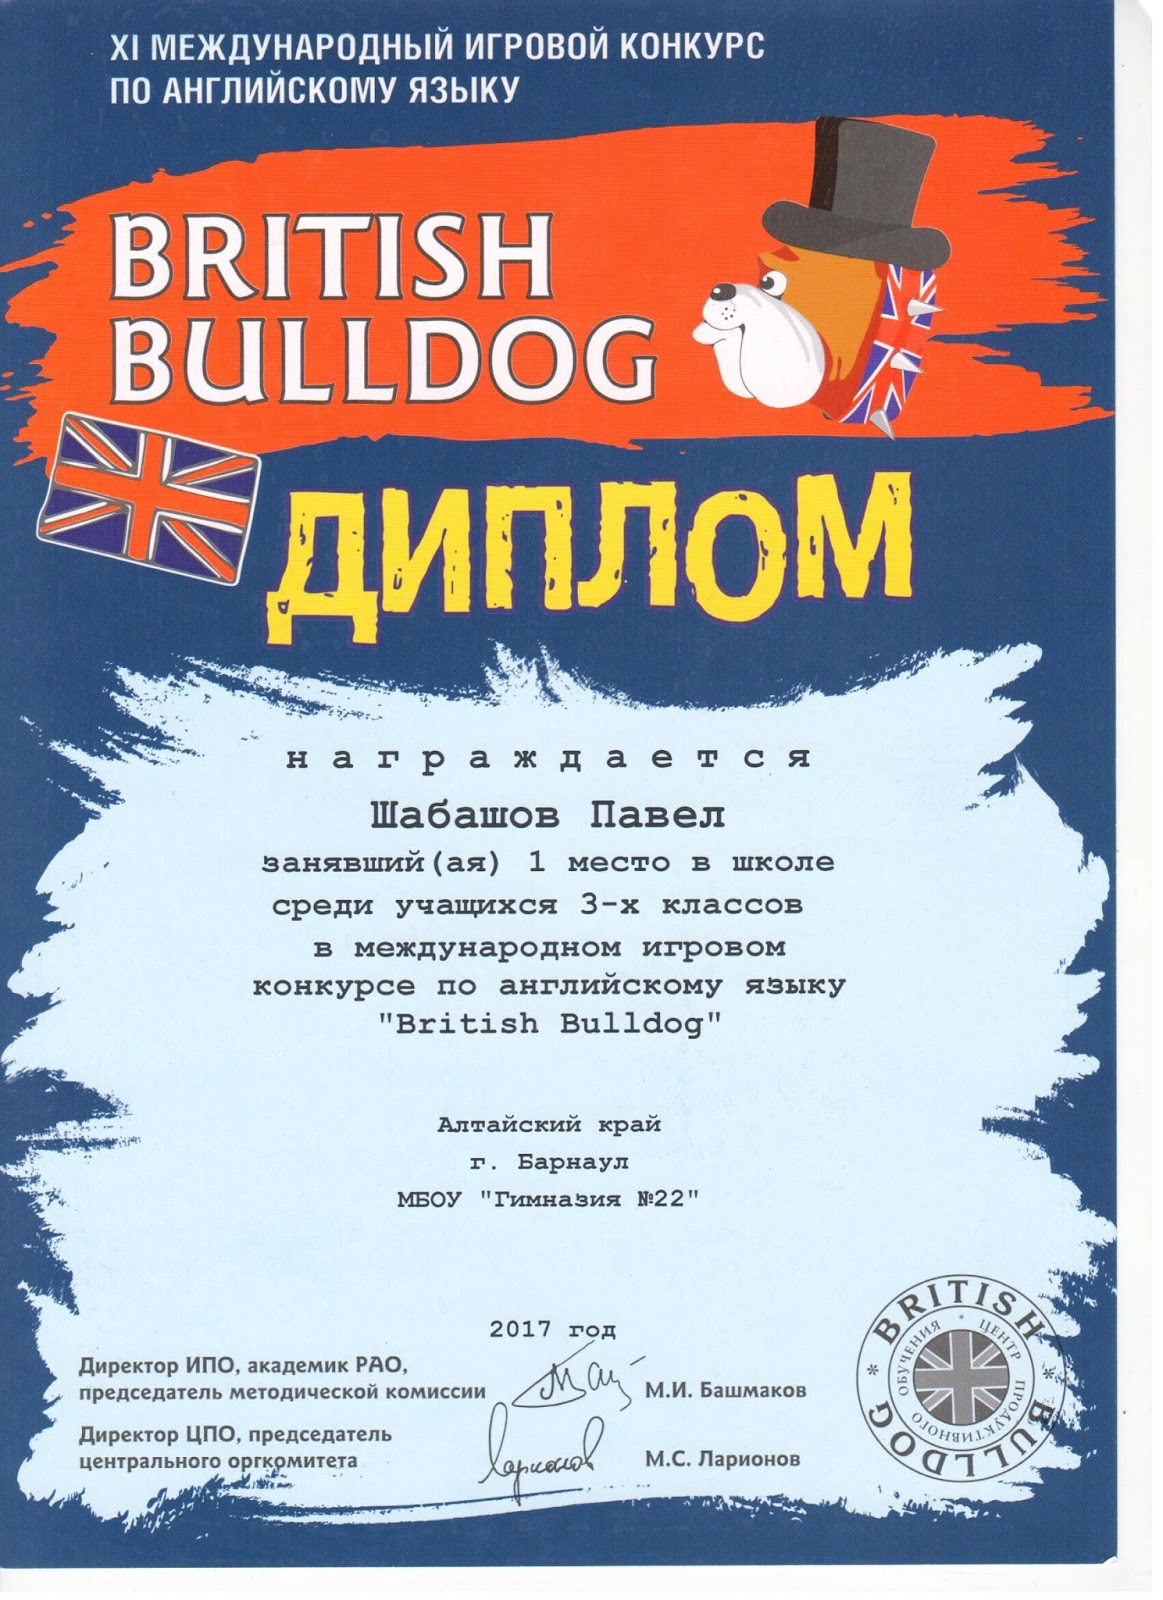 Бульдог конкурс по английскому языку. Британский бульдог грамота. Британский бульдог сертификат. British Bulldog (британский бульдог).